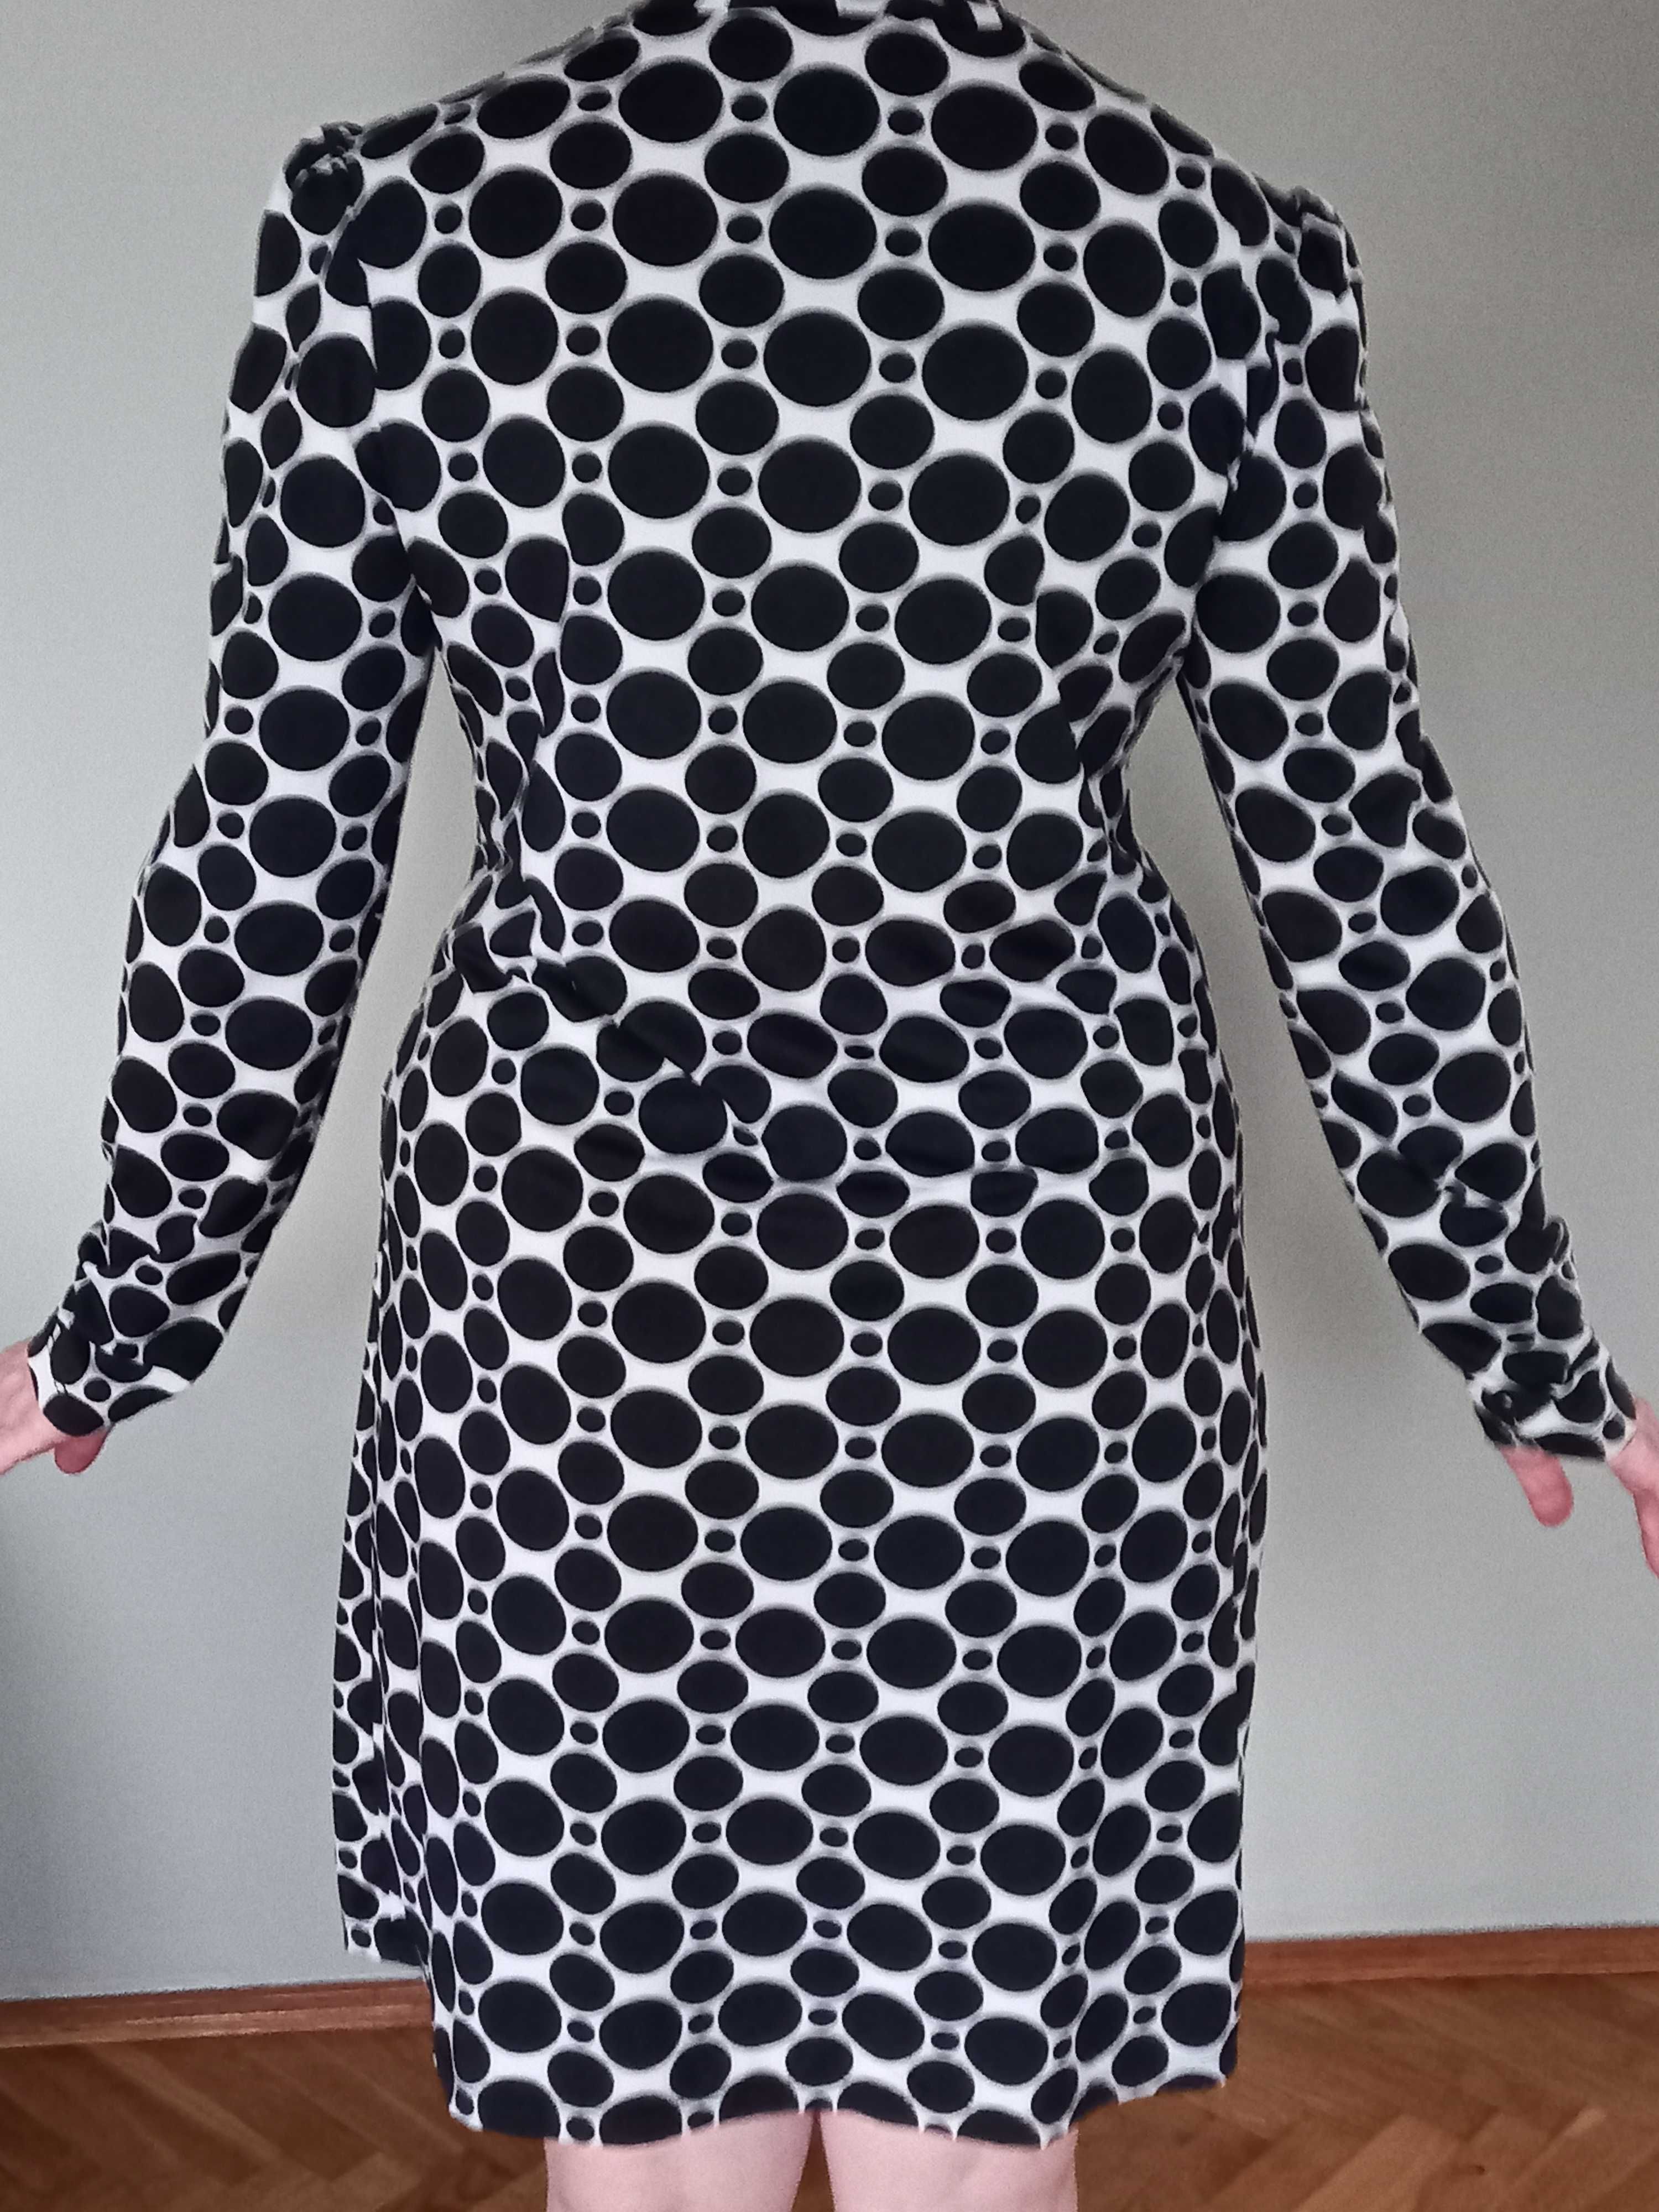 Класична сукня з  принтом - коло, 46-48 розмір, прямий силует